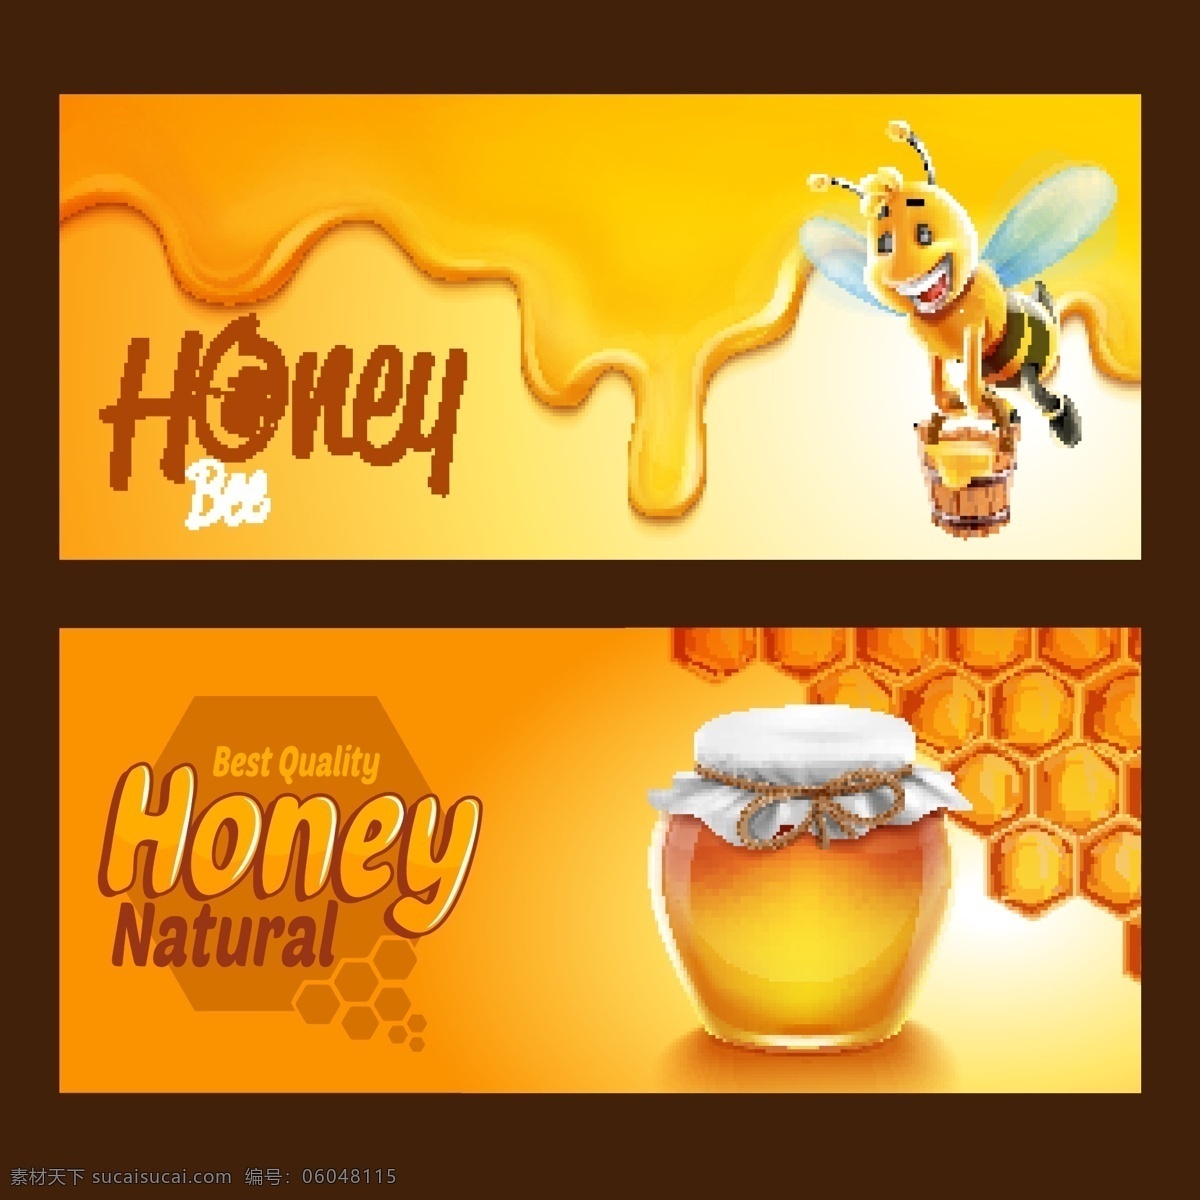 天然 蜂蜜 食品包装 背景图片 黄色 淘宝 宣传